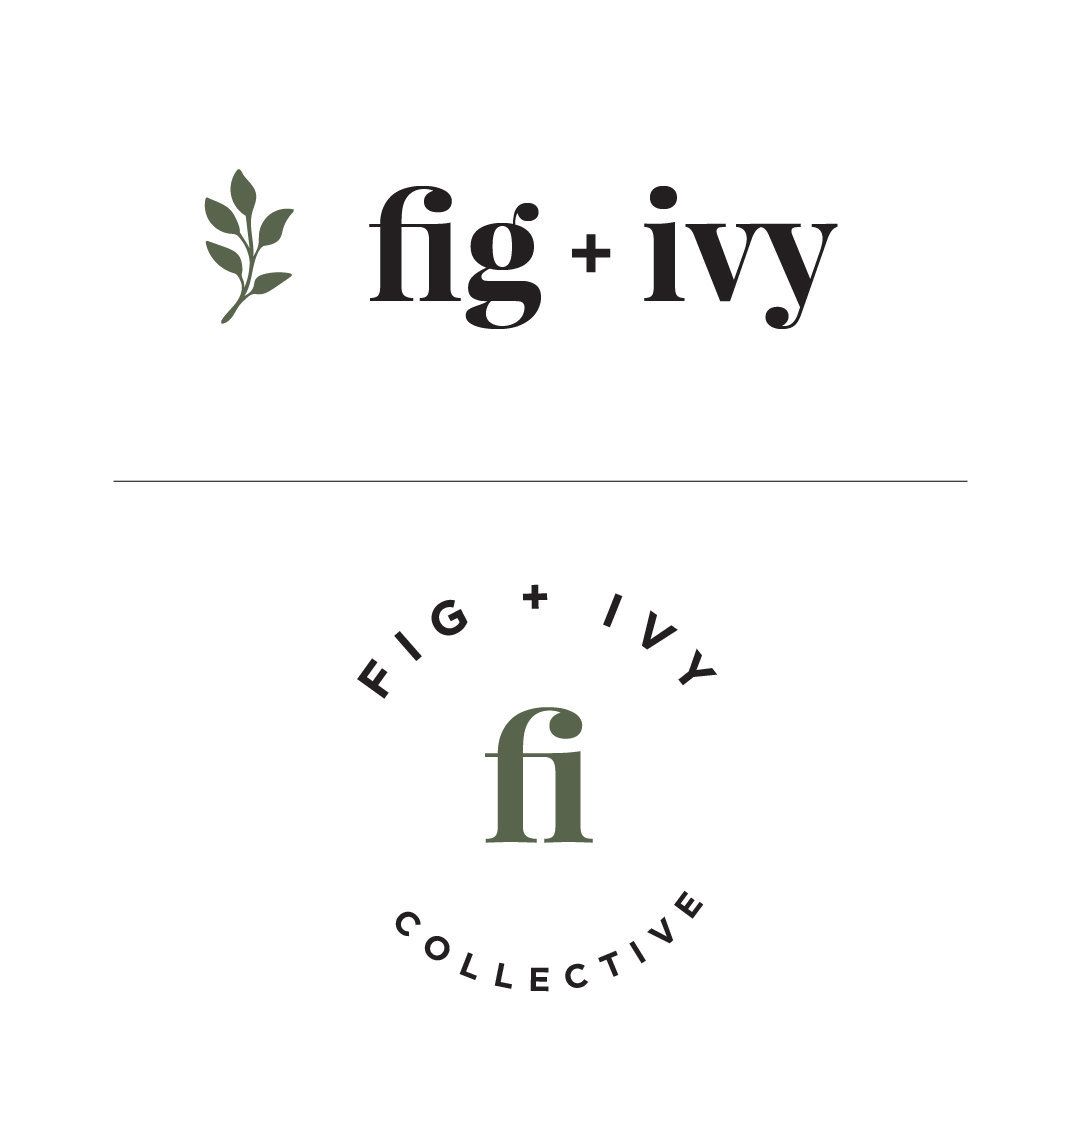 fig-ivy-mobile-12